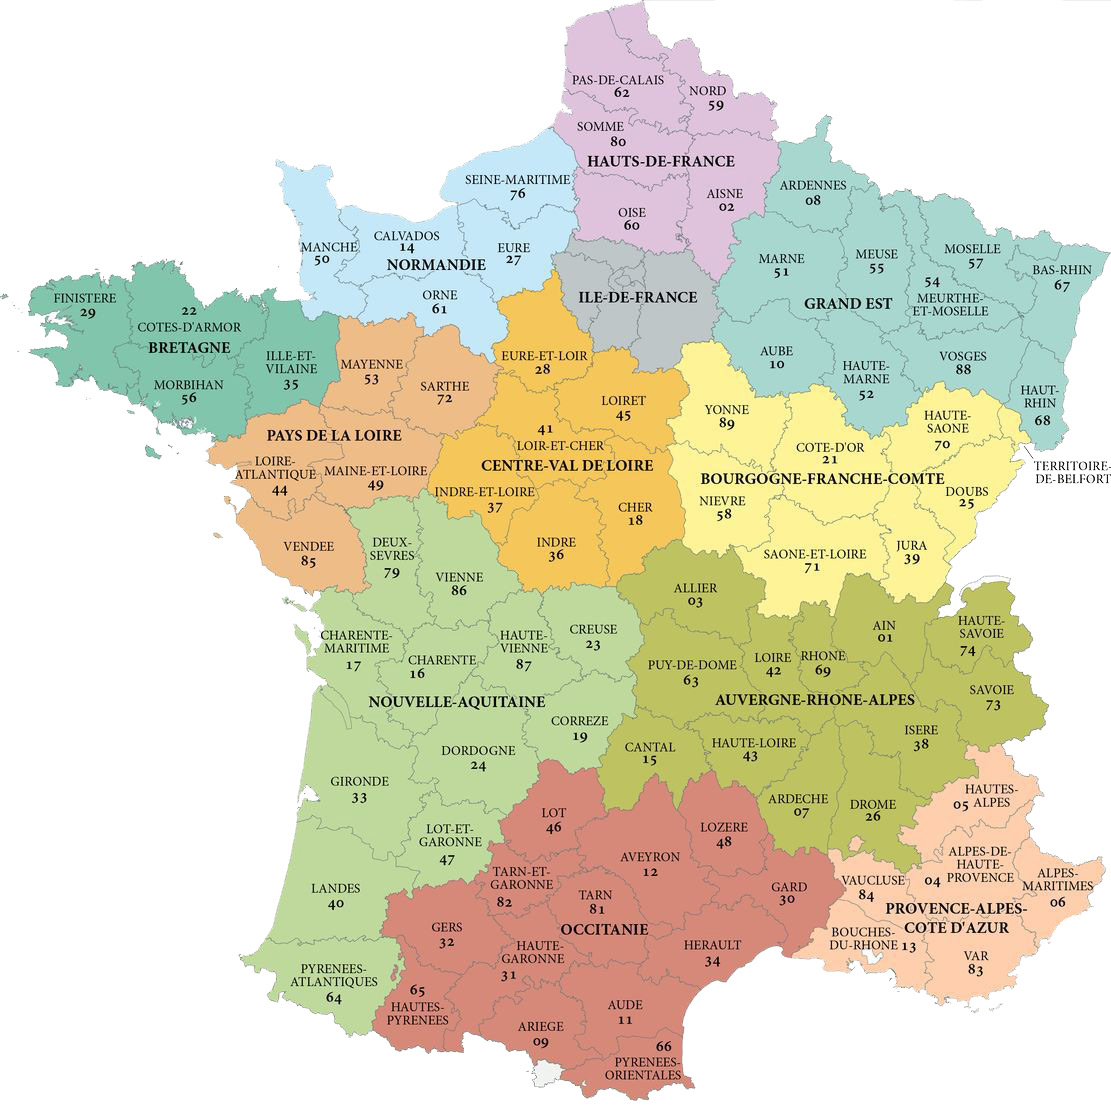 22 Régions En France - Les Departements De France destiné Les 22 Régions De France Métropolitaine